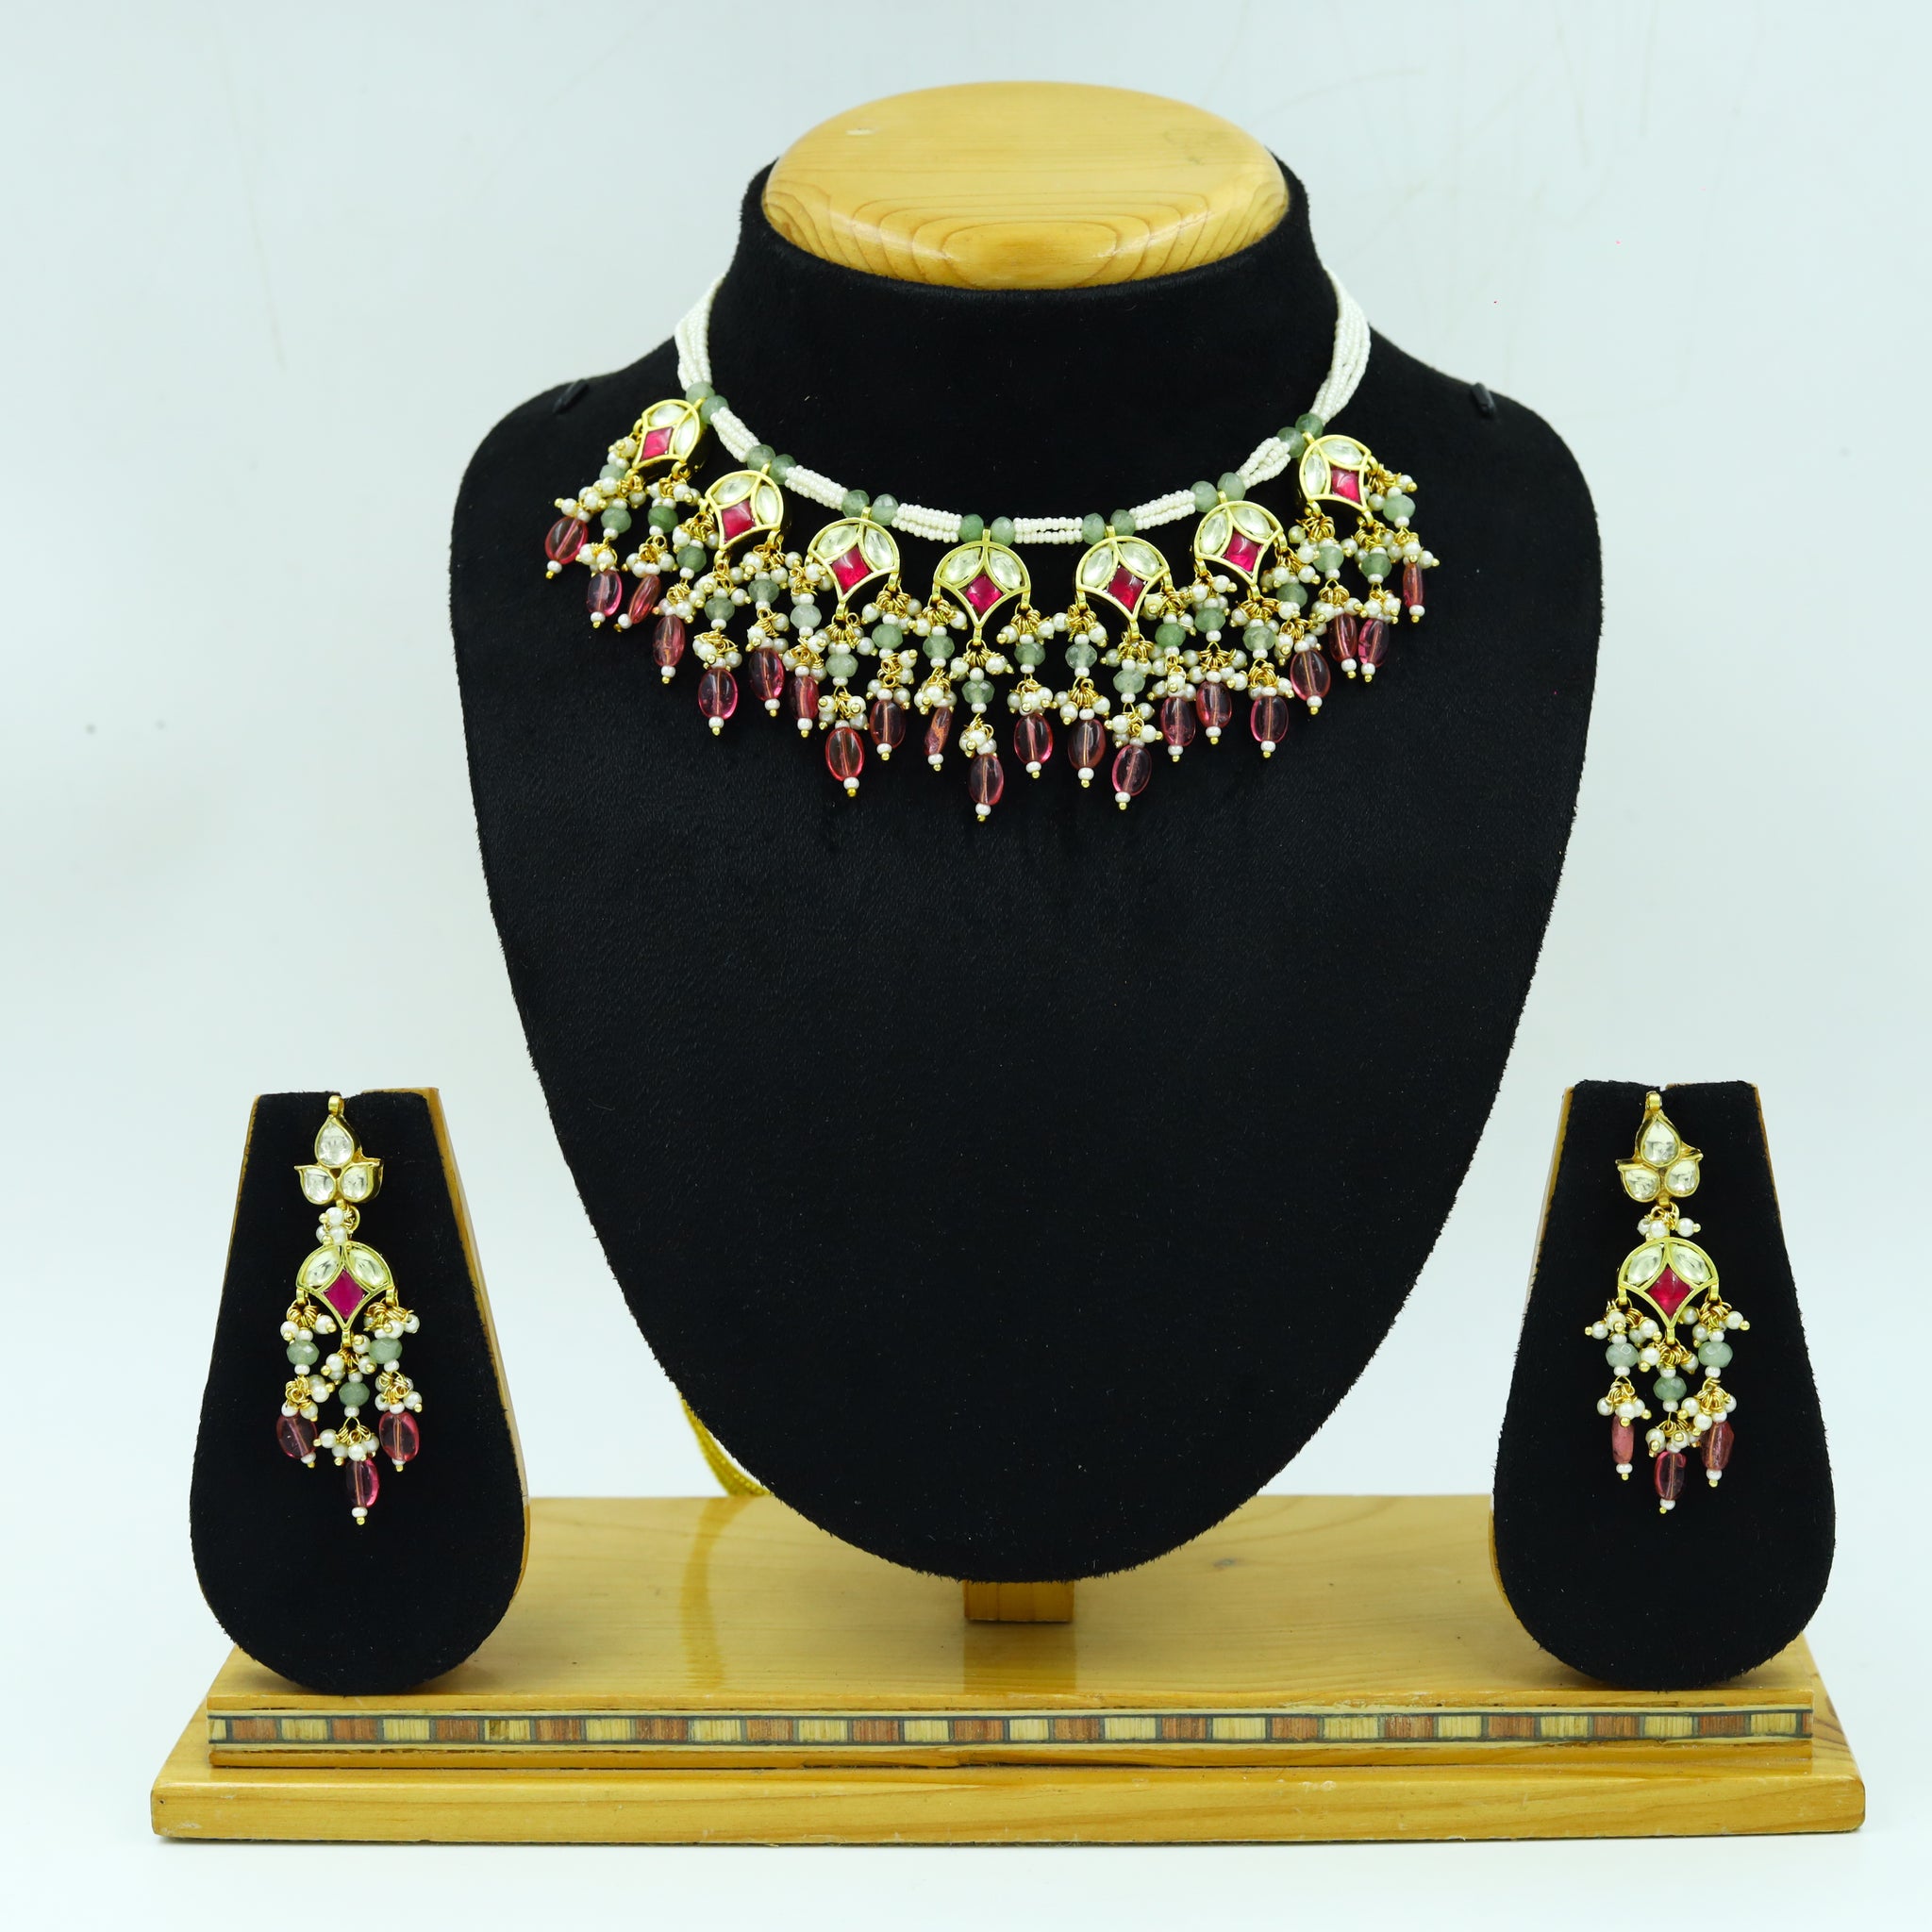 Dazzles Jewellery - Best Quality Artficial Imitation Jewellery – Dazzles  Fashion and Costume Jewellery